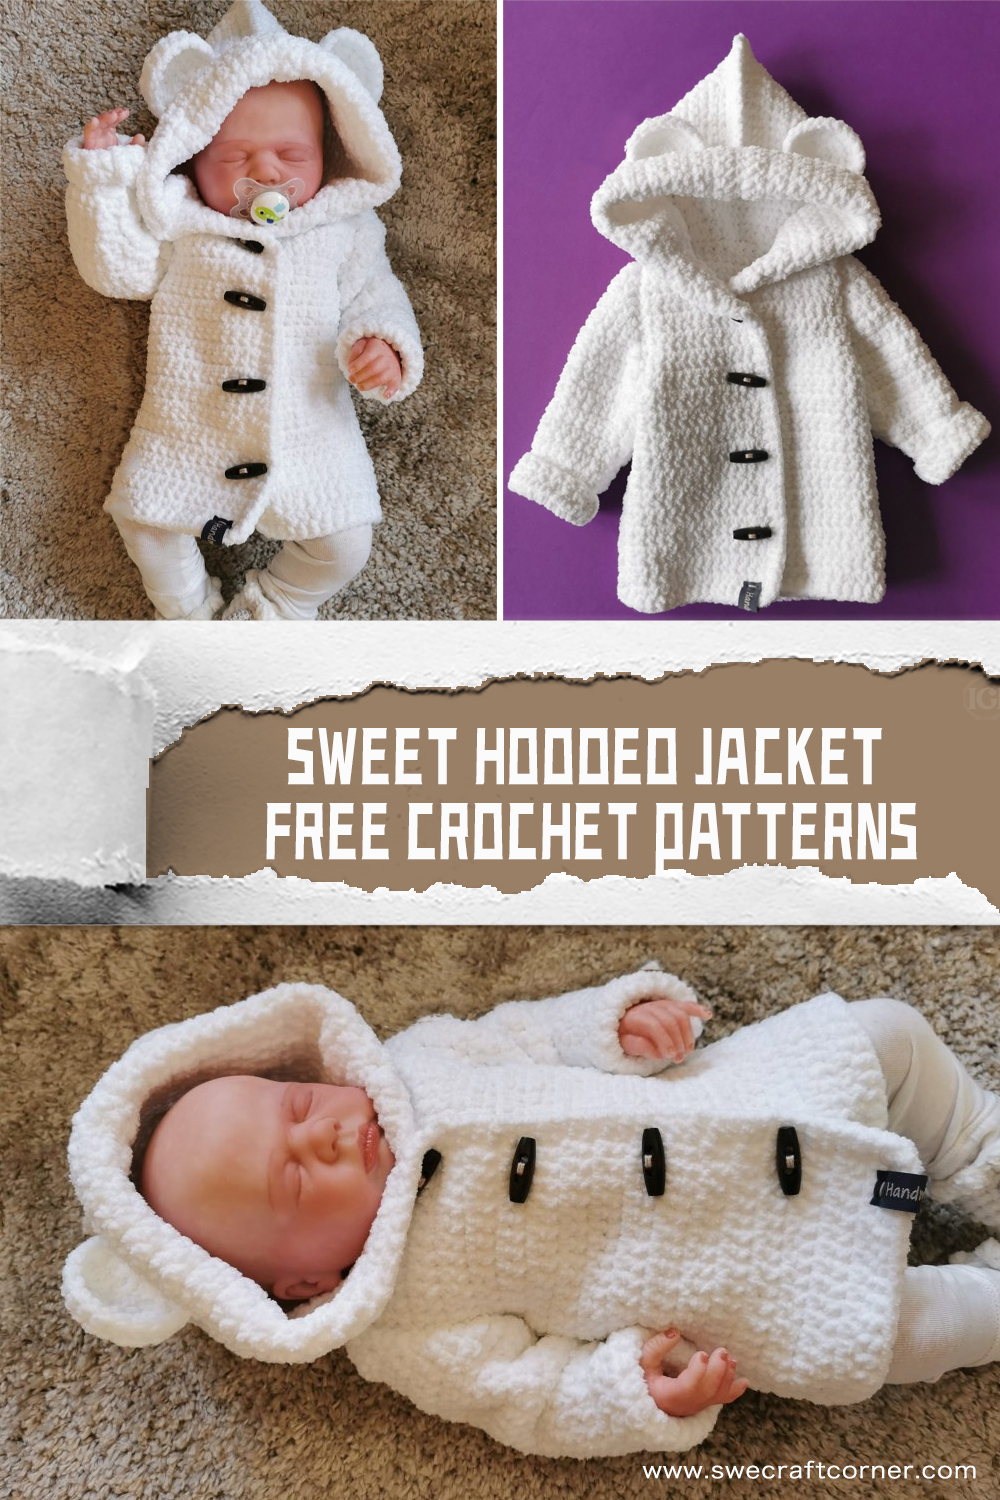 Hooded Jacket FREE Crochet Patterns 